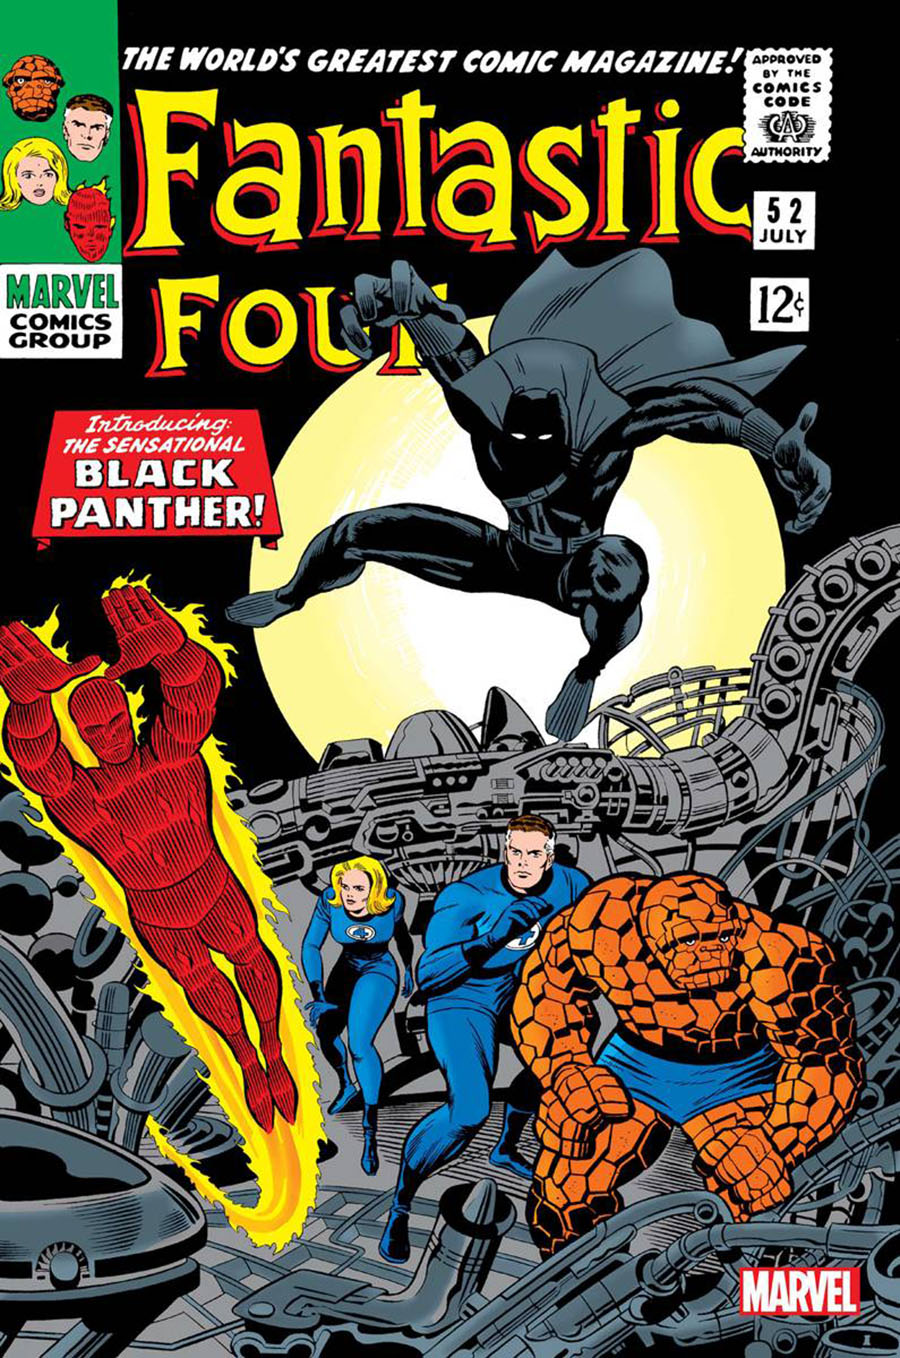 Fantastic Four #52 Cover B Facsimile Edition